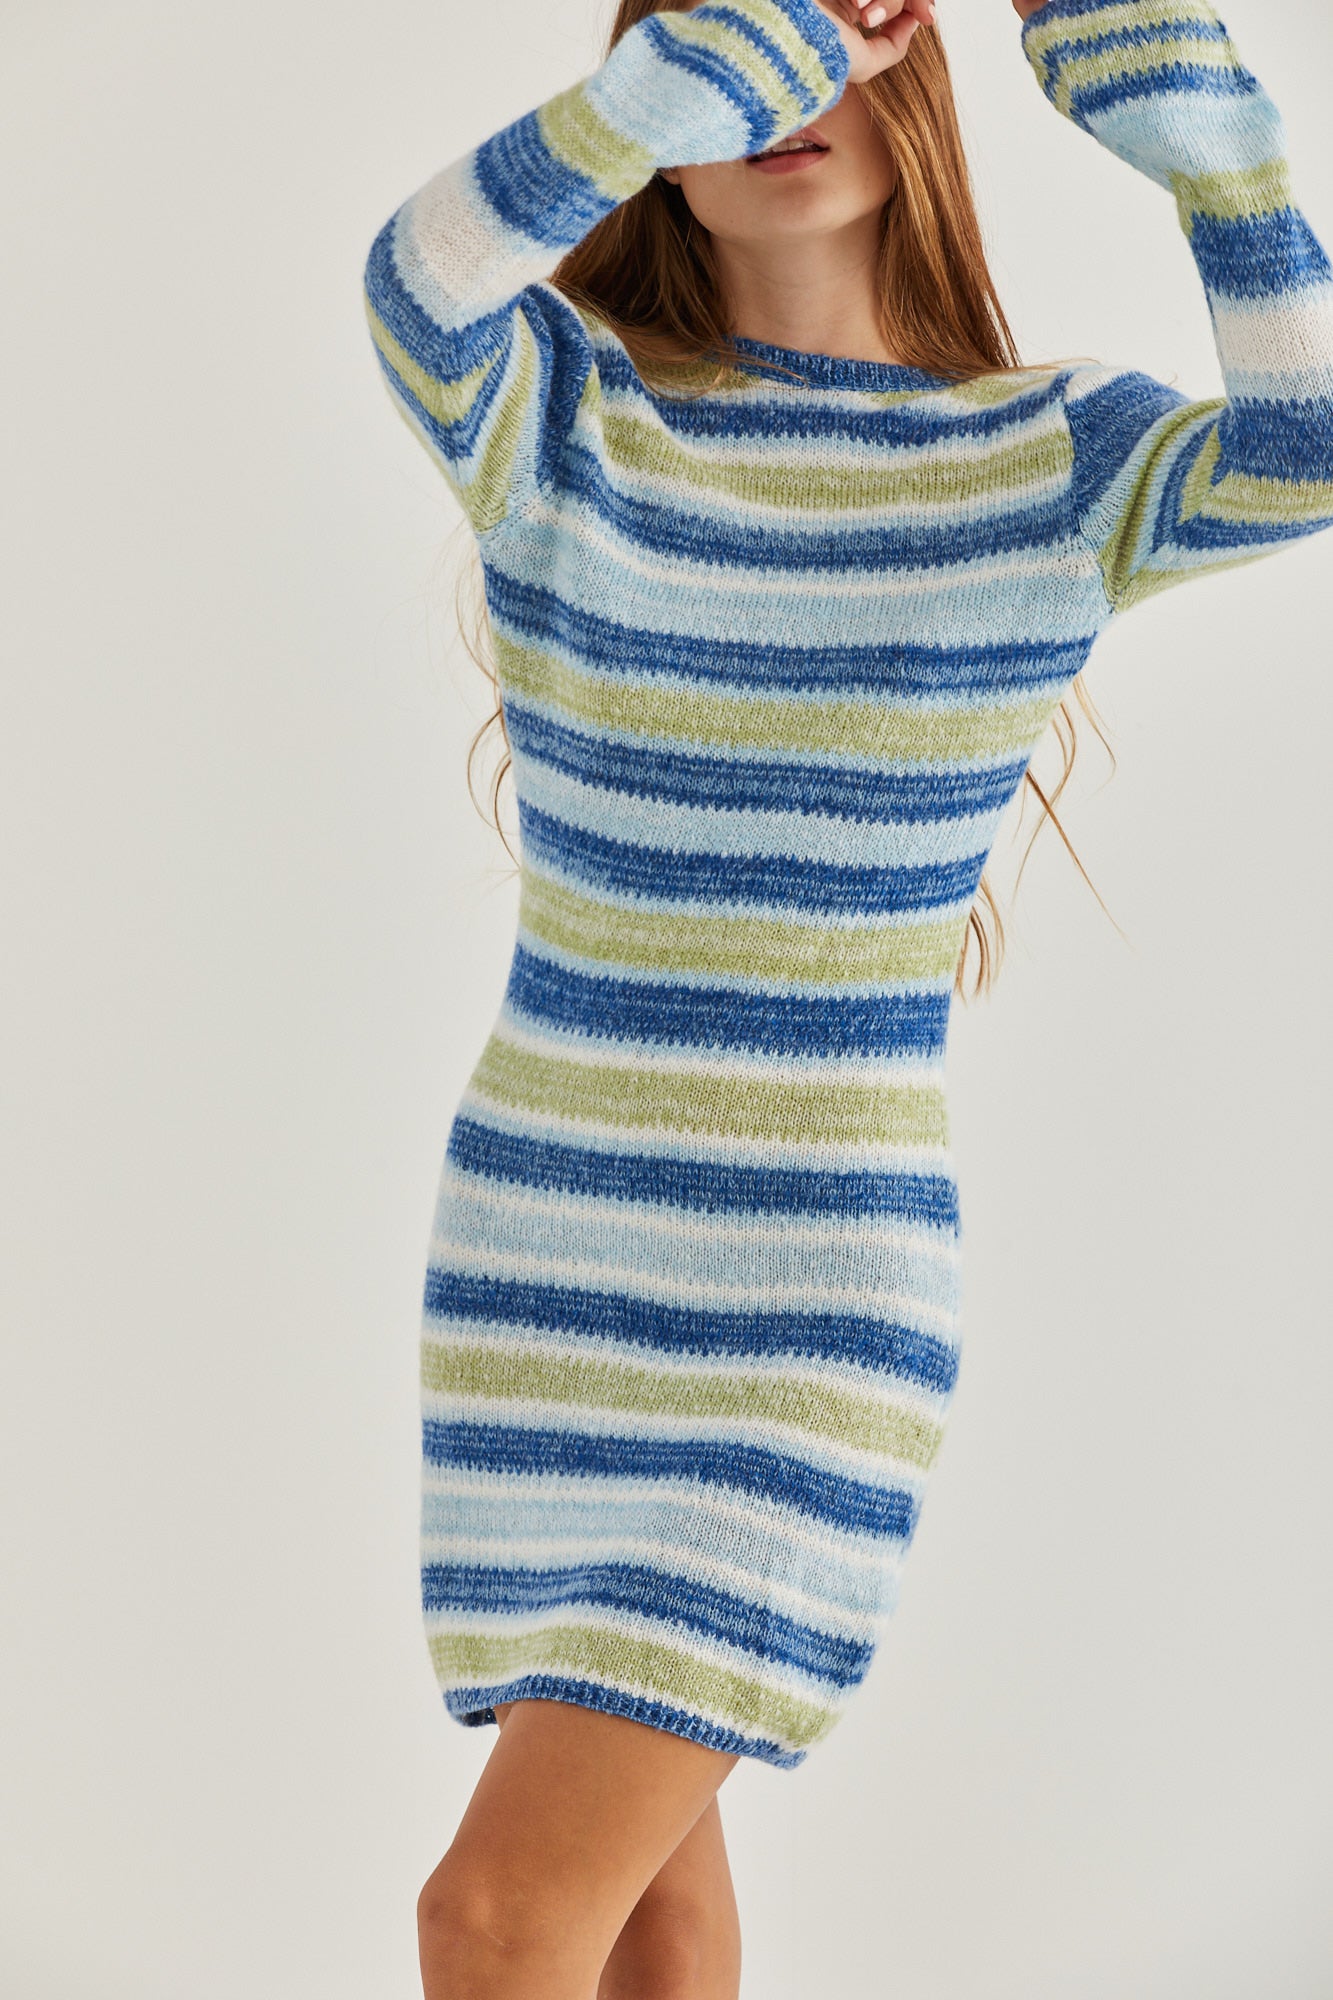 Lazzy knit dress